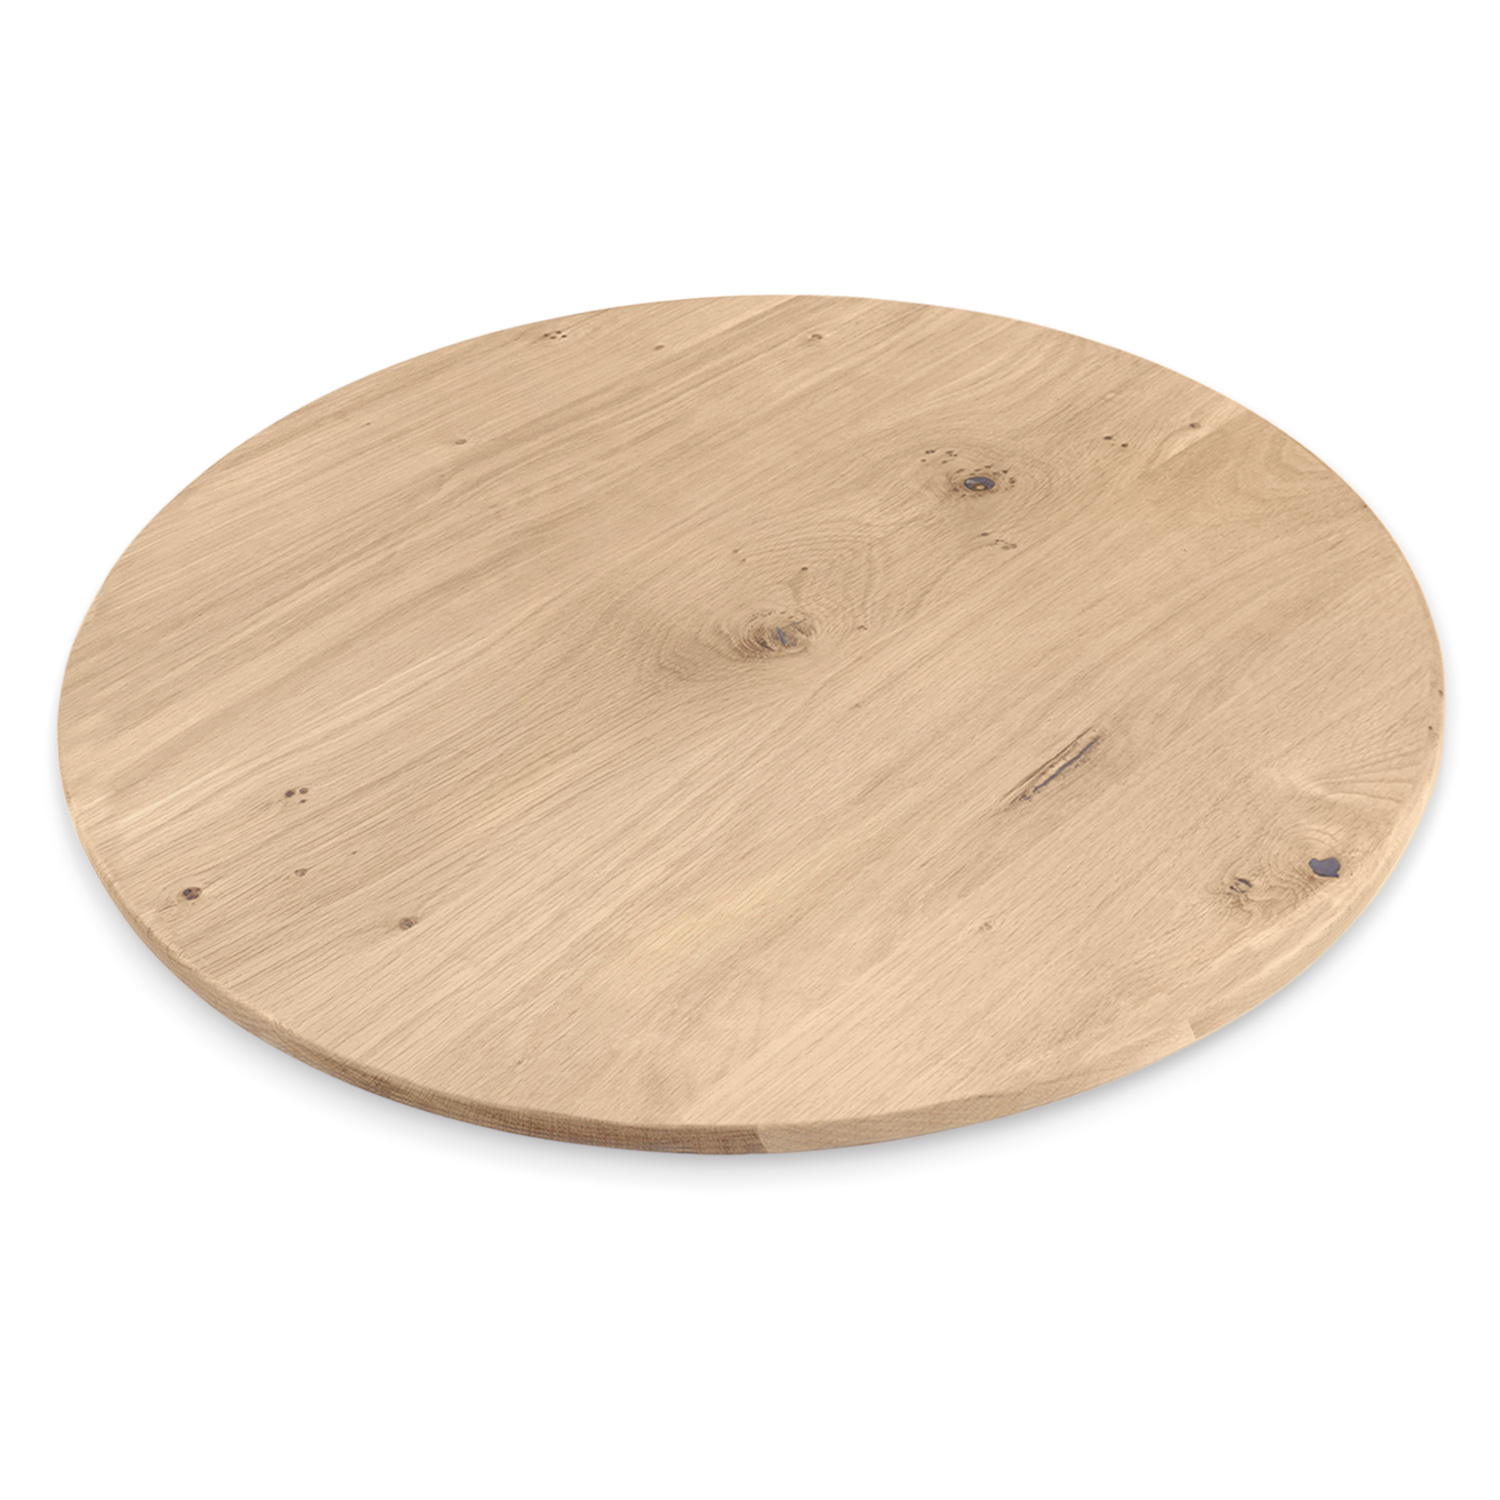  Eiken tafelblad rond - 2,5 cm dik (1-laag) - Diverse afmetingen - optioneel geborsteld - extra rustiek Europees eikenhout - met extra brede lamellen (circa 14-20 cm) - verlijmd kd 10-12%